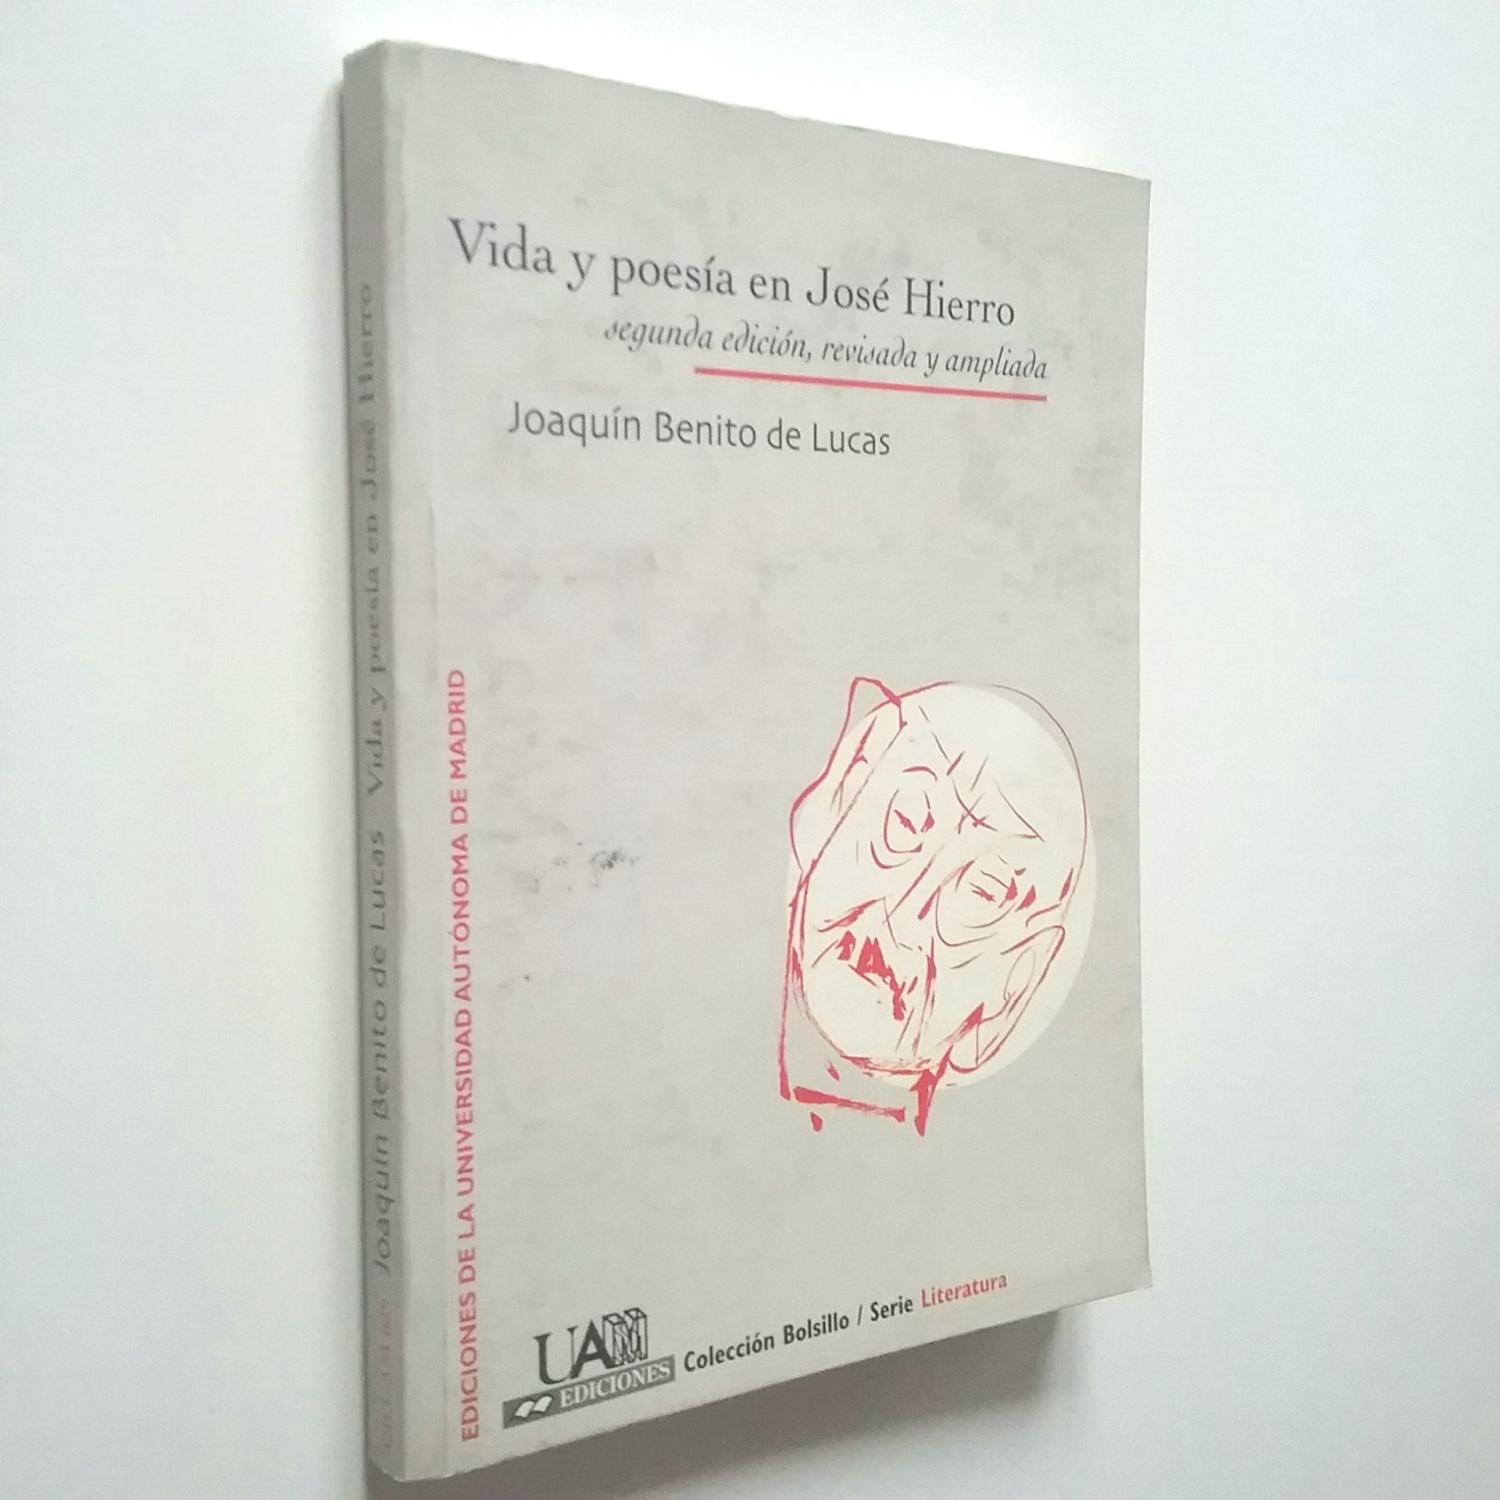 Vida y poesía en José Hierro (Segunda edición revisada y ampliada) - Joaquín Benito de Lucas